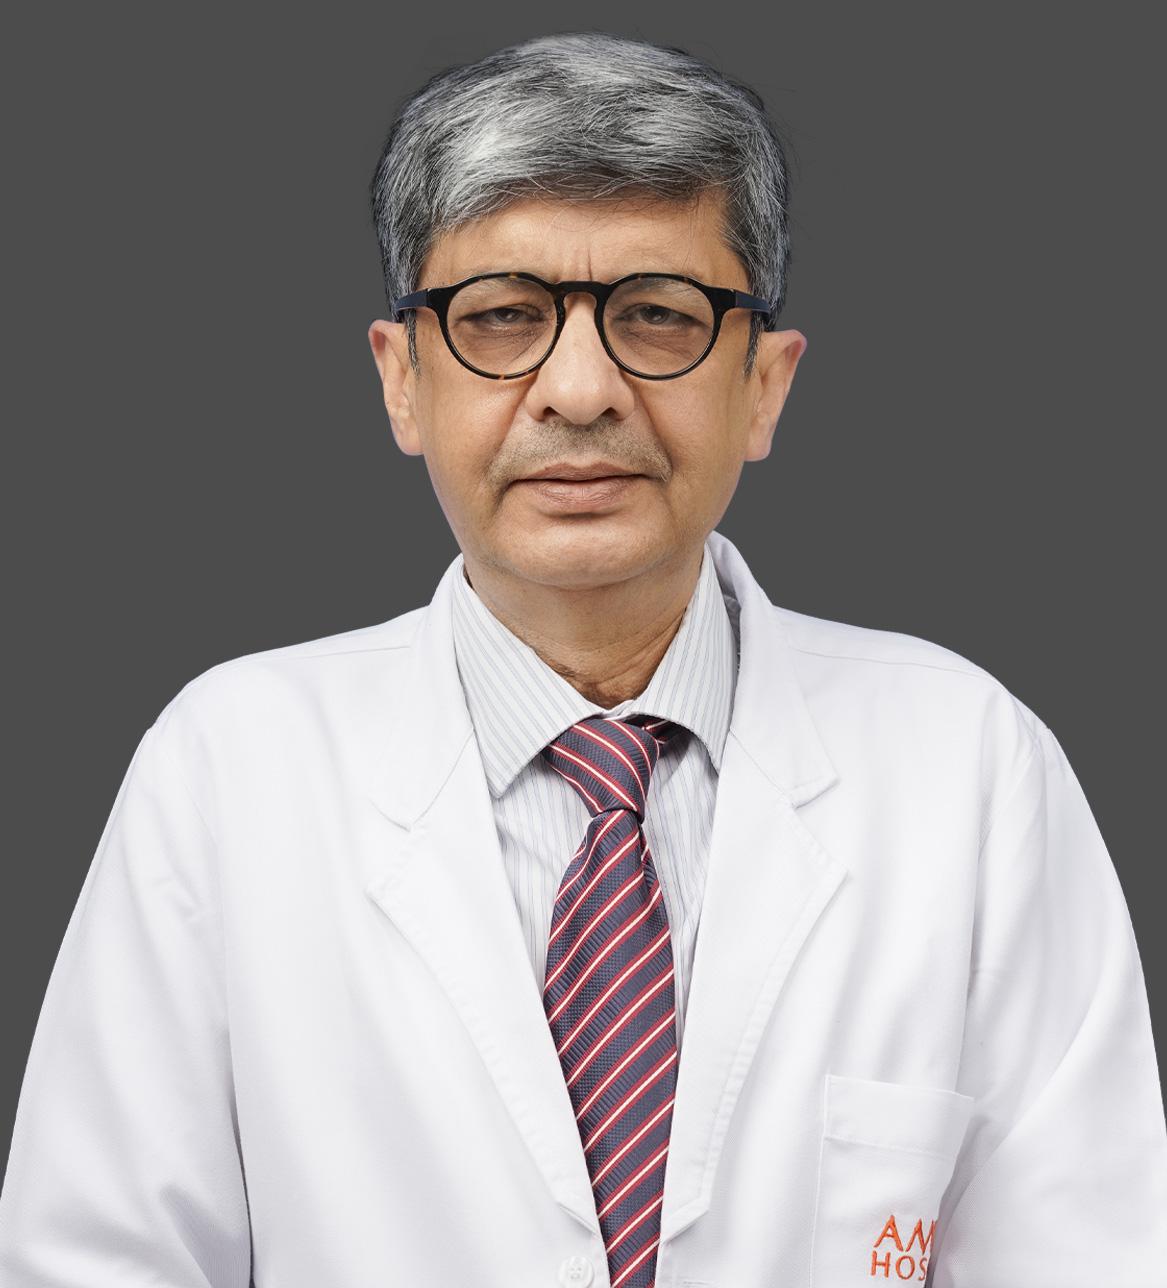 Dr. Neeraj Narayan Mathur